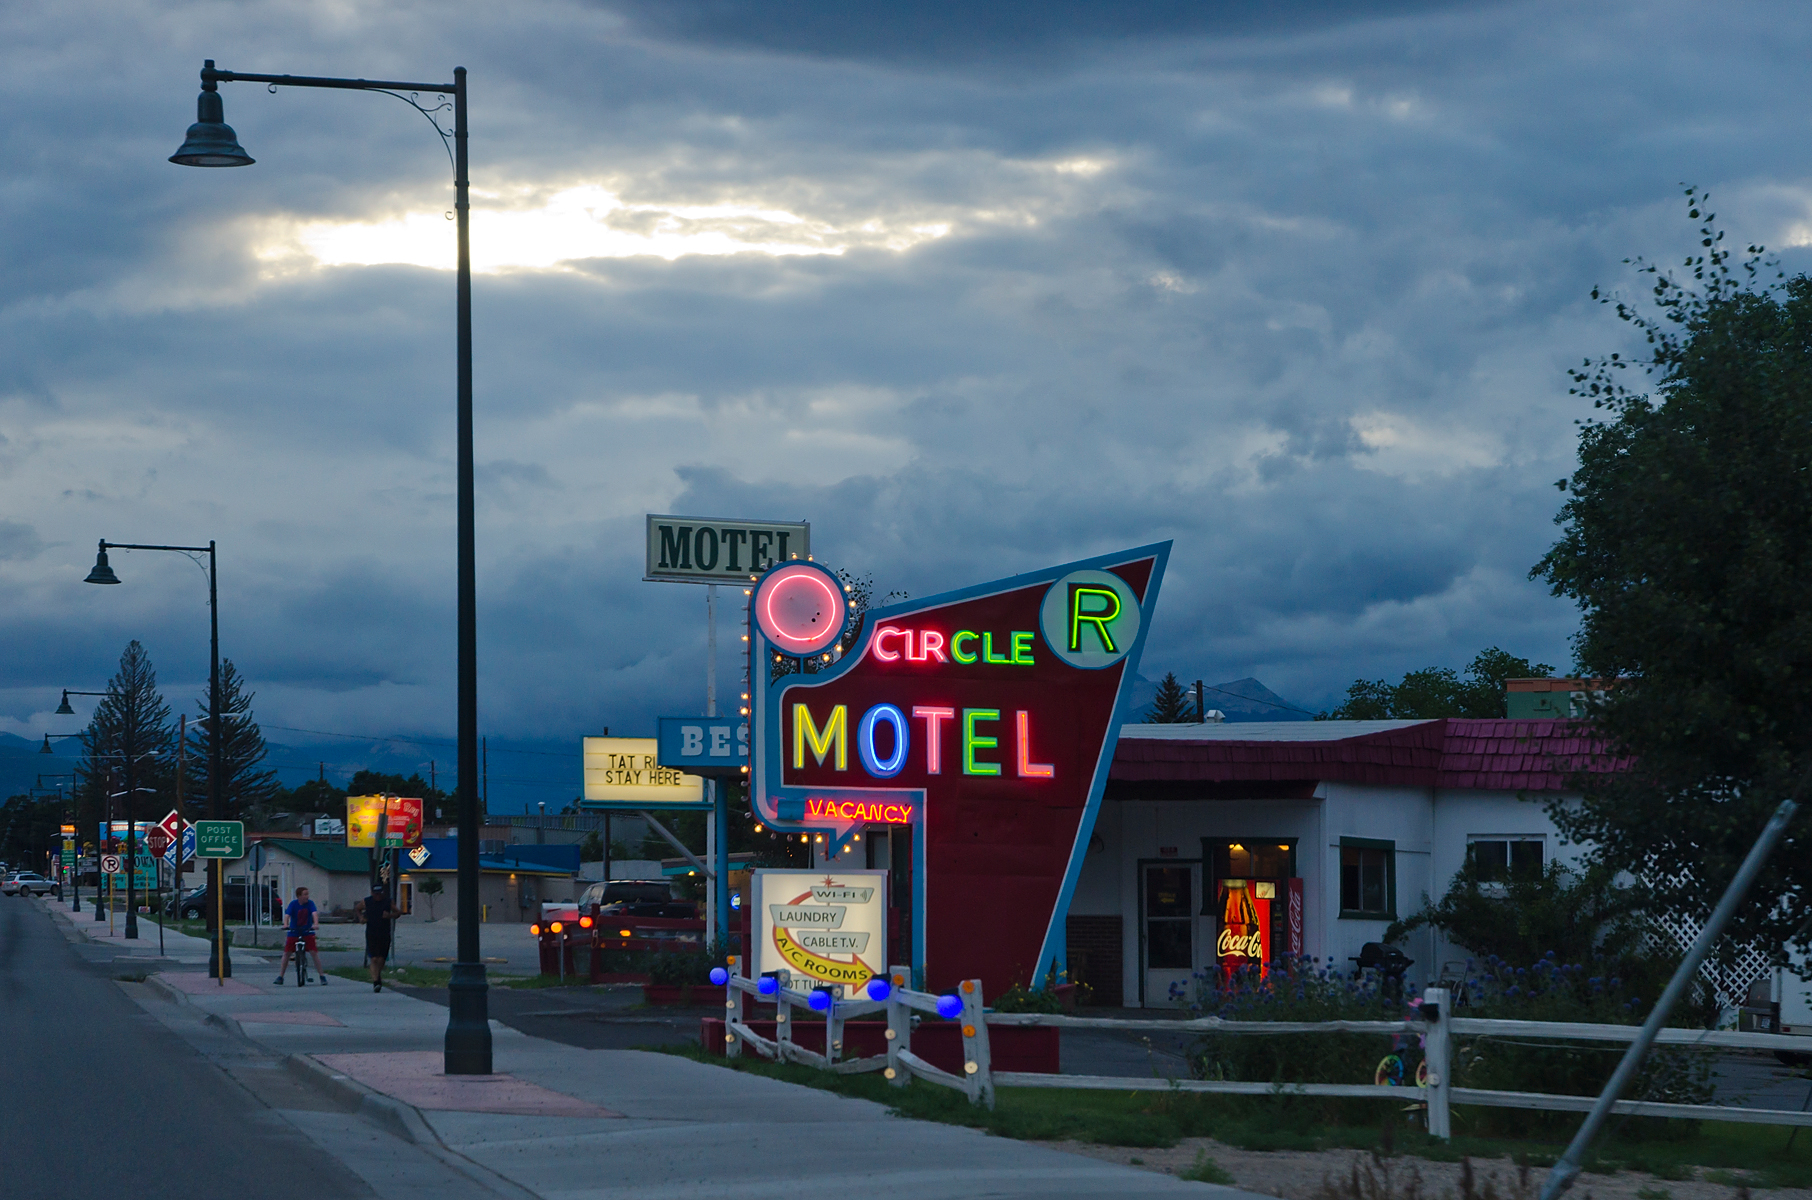 Circle R Motel - 304 U.S. 50, Salida, Colorado U.S.A. - August 1, 2013